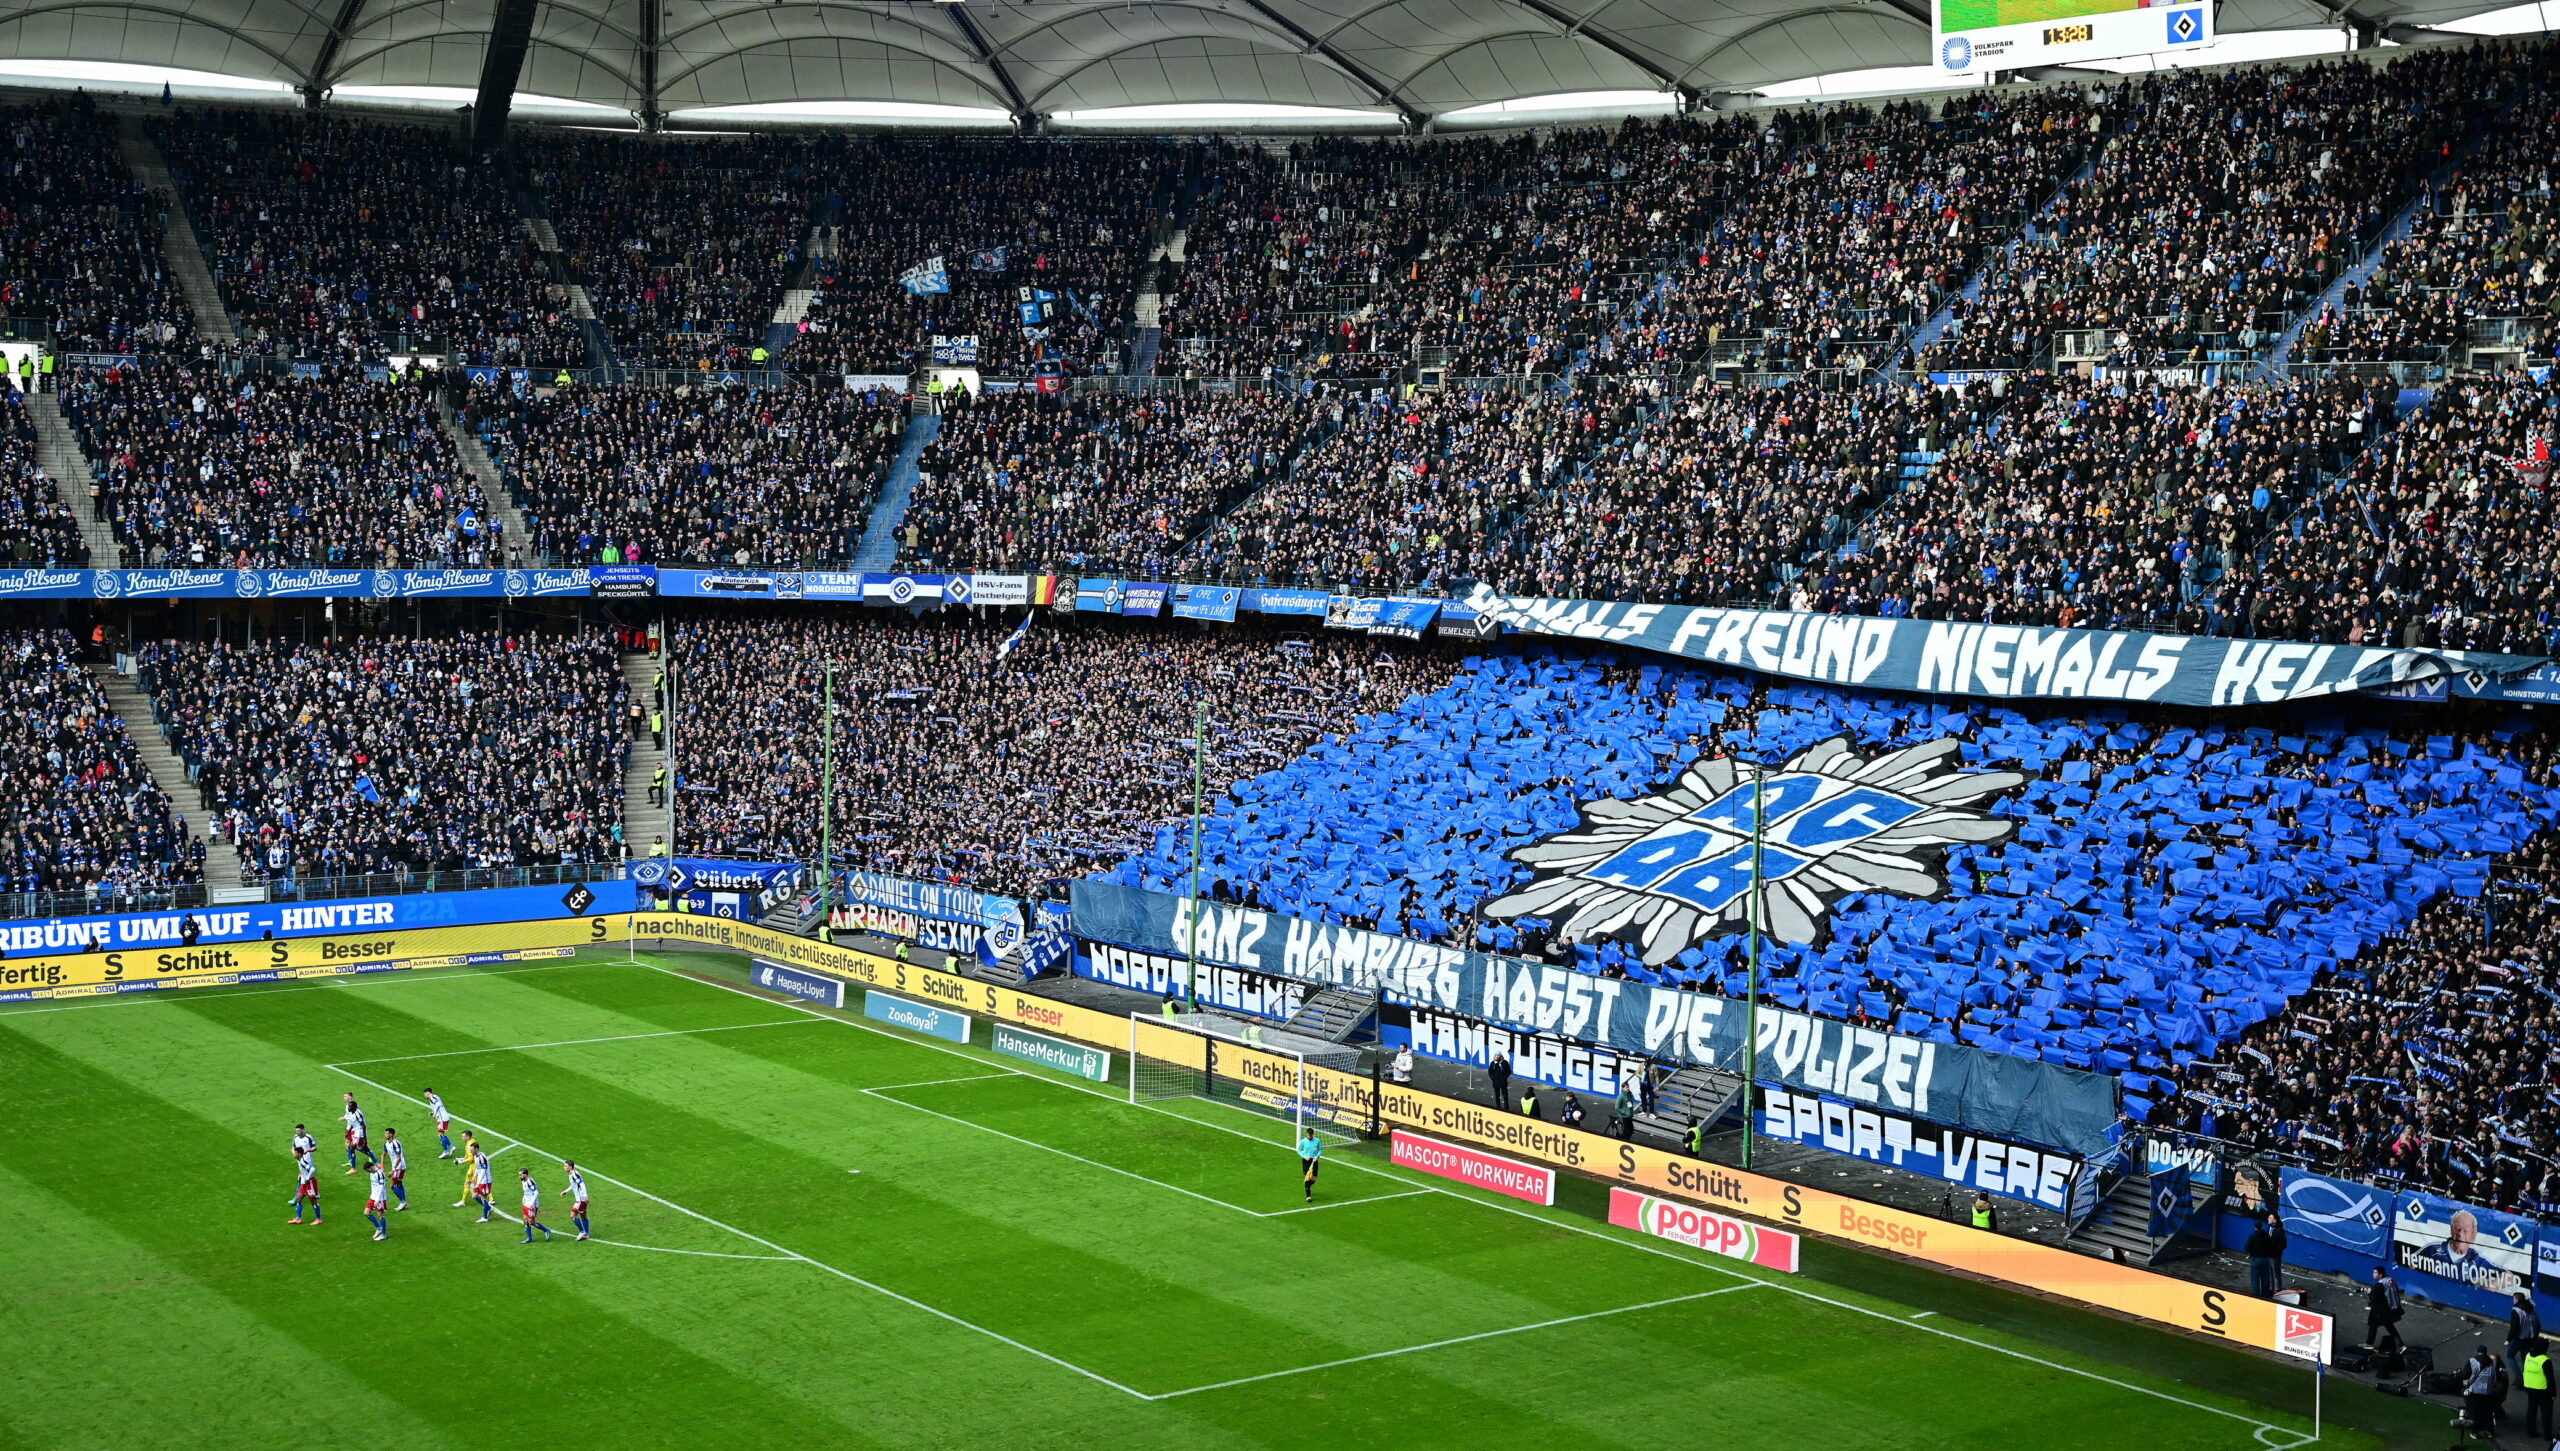 Die HSV-Nordtribüne vor dem Spiel gegen Elversberg. Auch gegen die Polizei gerichtete Banner sind zu sehen